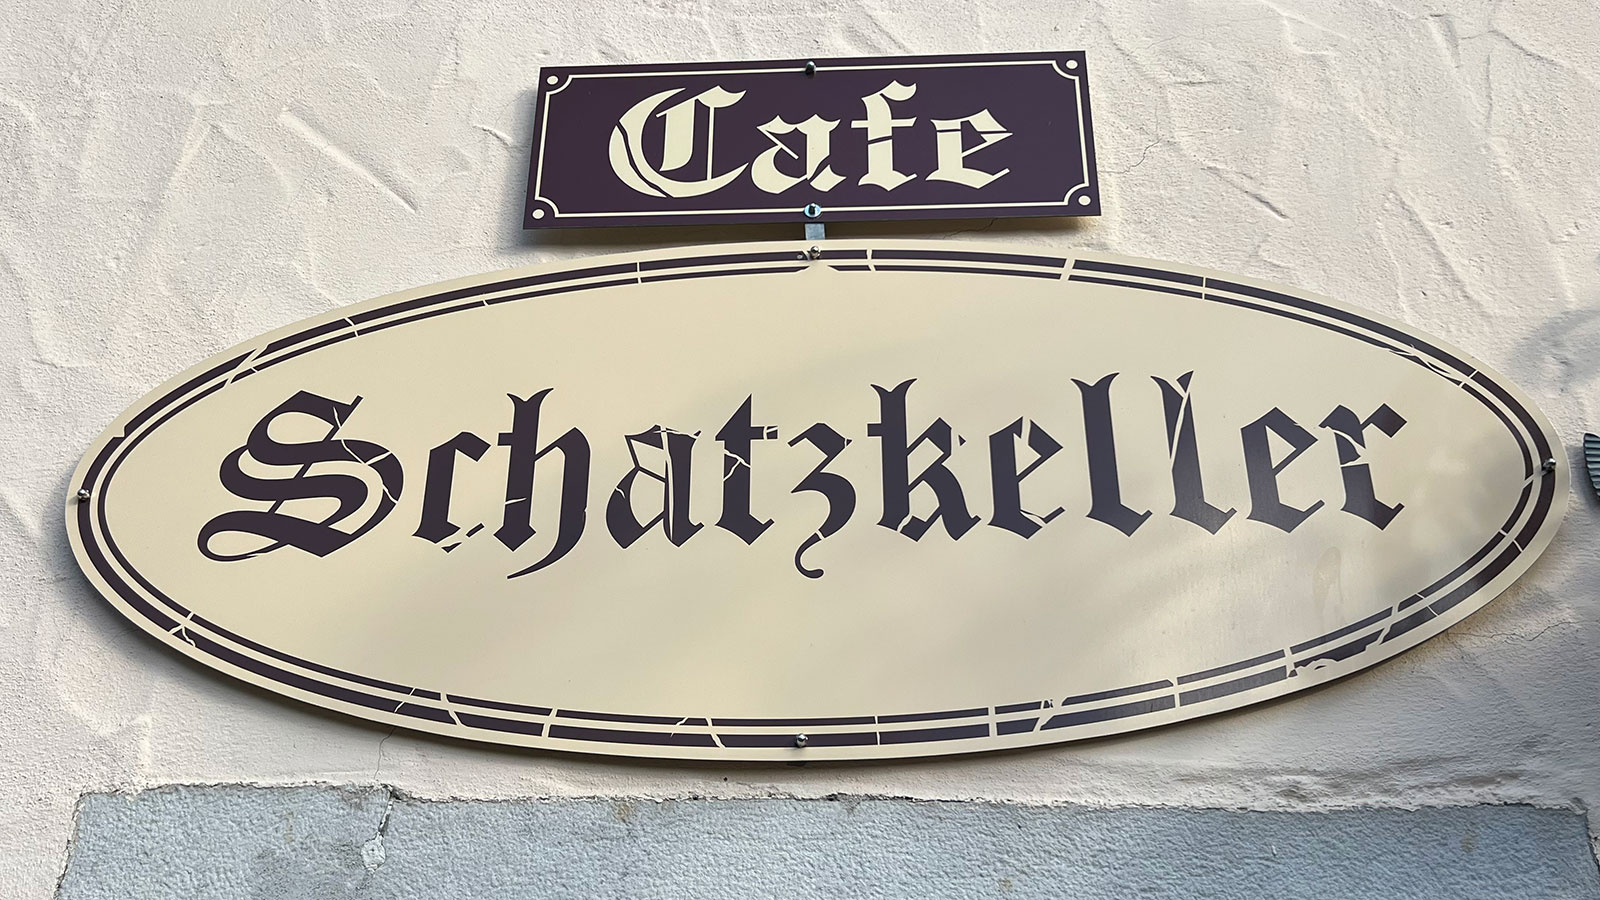 Cafe Schatzkeller 01